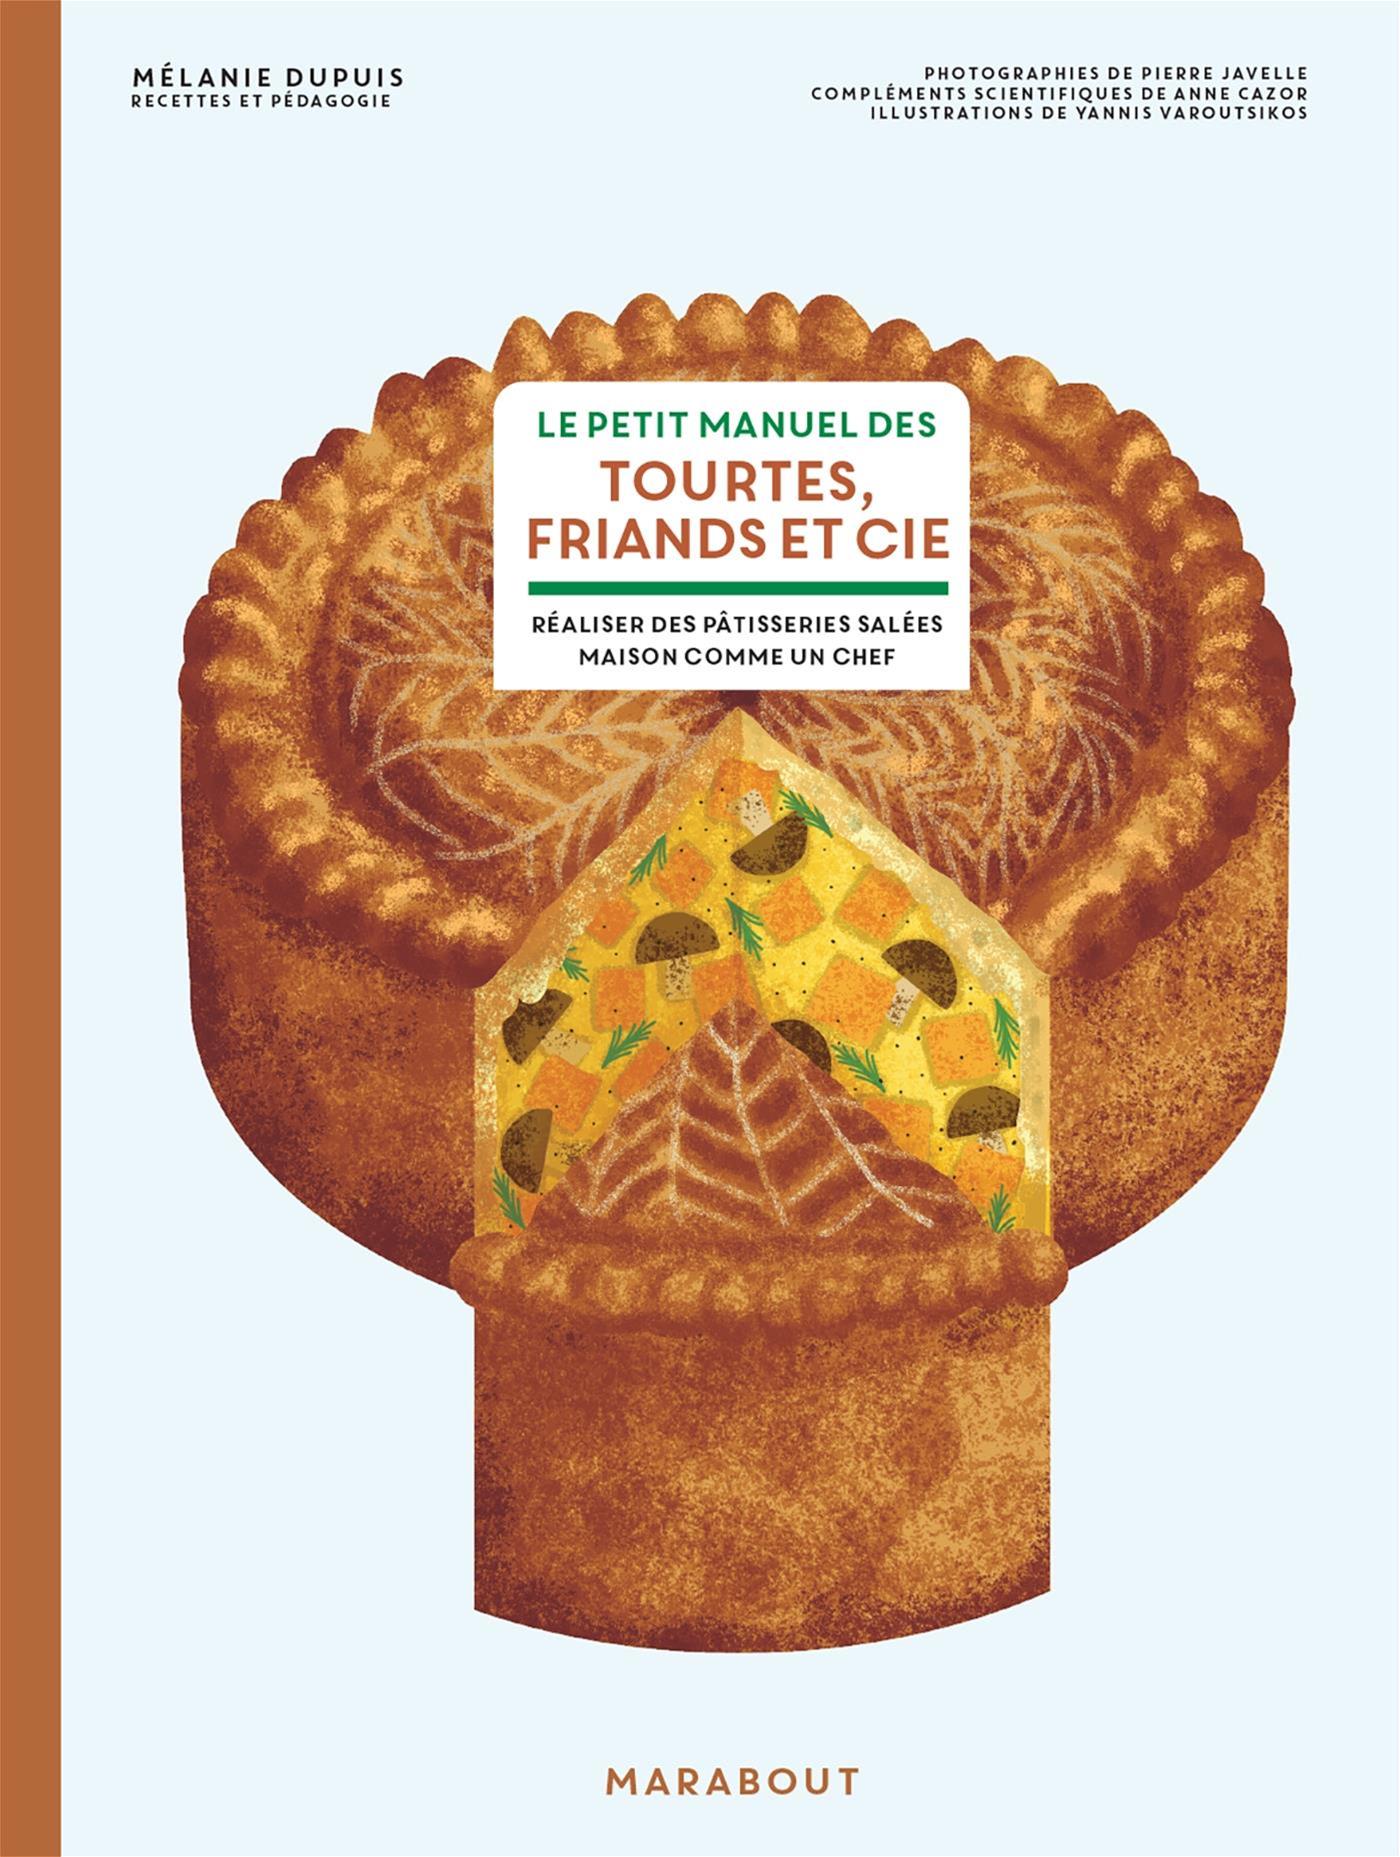 Le petit manuel des tourtes, friands et cie    - Marabout - Livre de cuisine - 